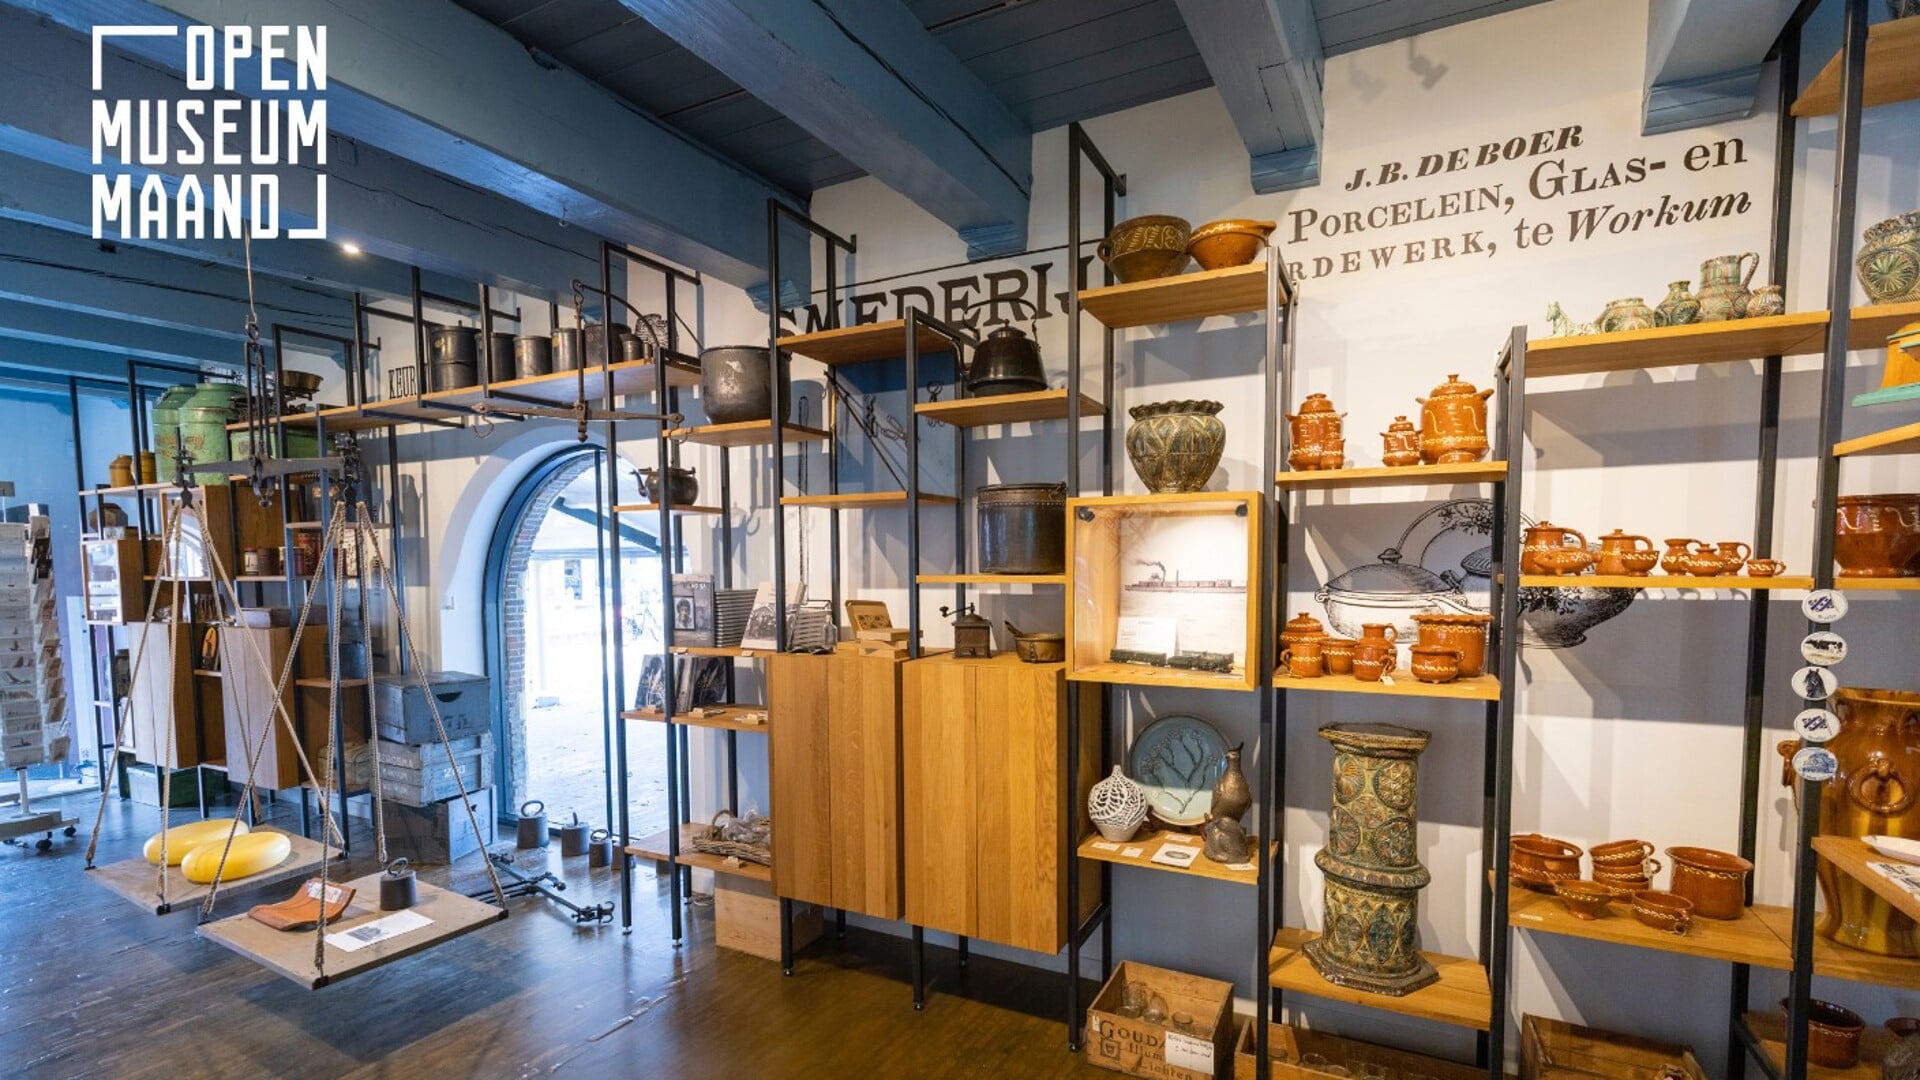 Open Museum Maand in Súdwest-Fryslân